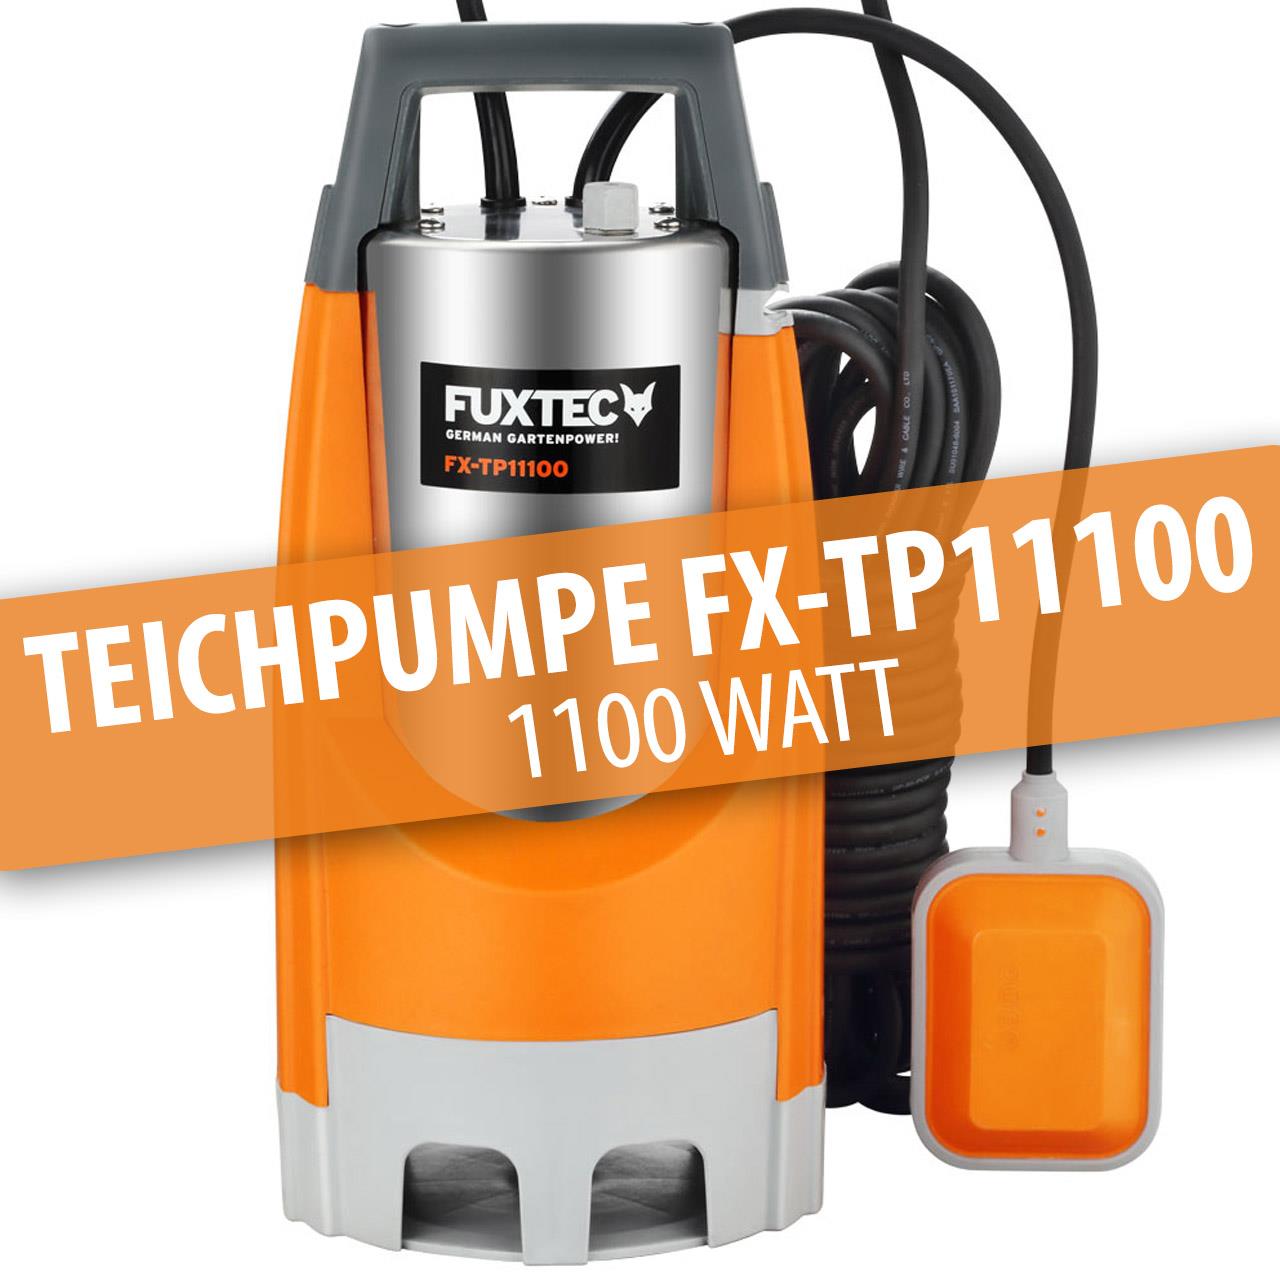 FUXTEC Tószivattyú FX-TP11100 - 1100 Watt